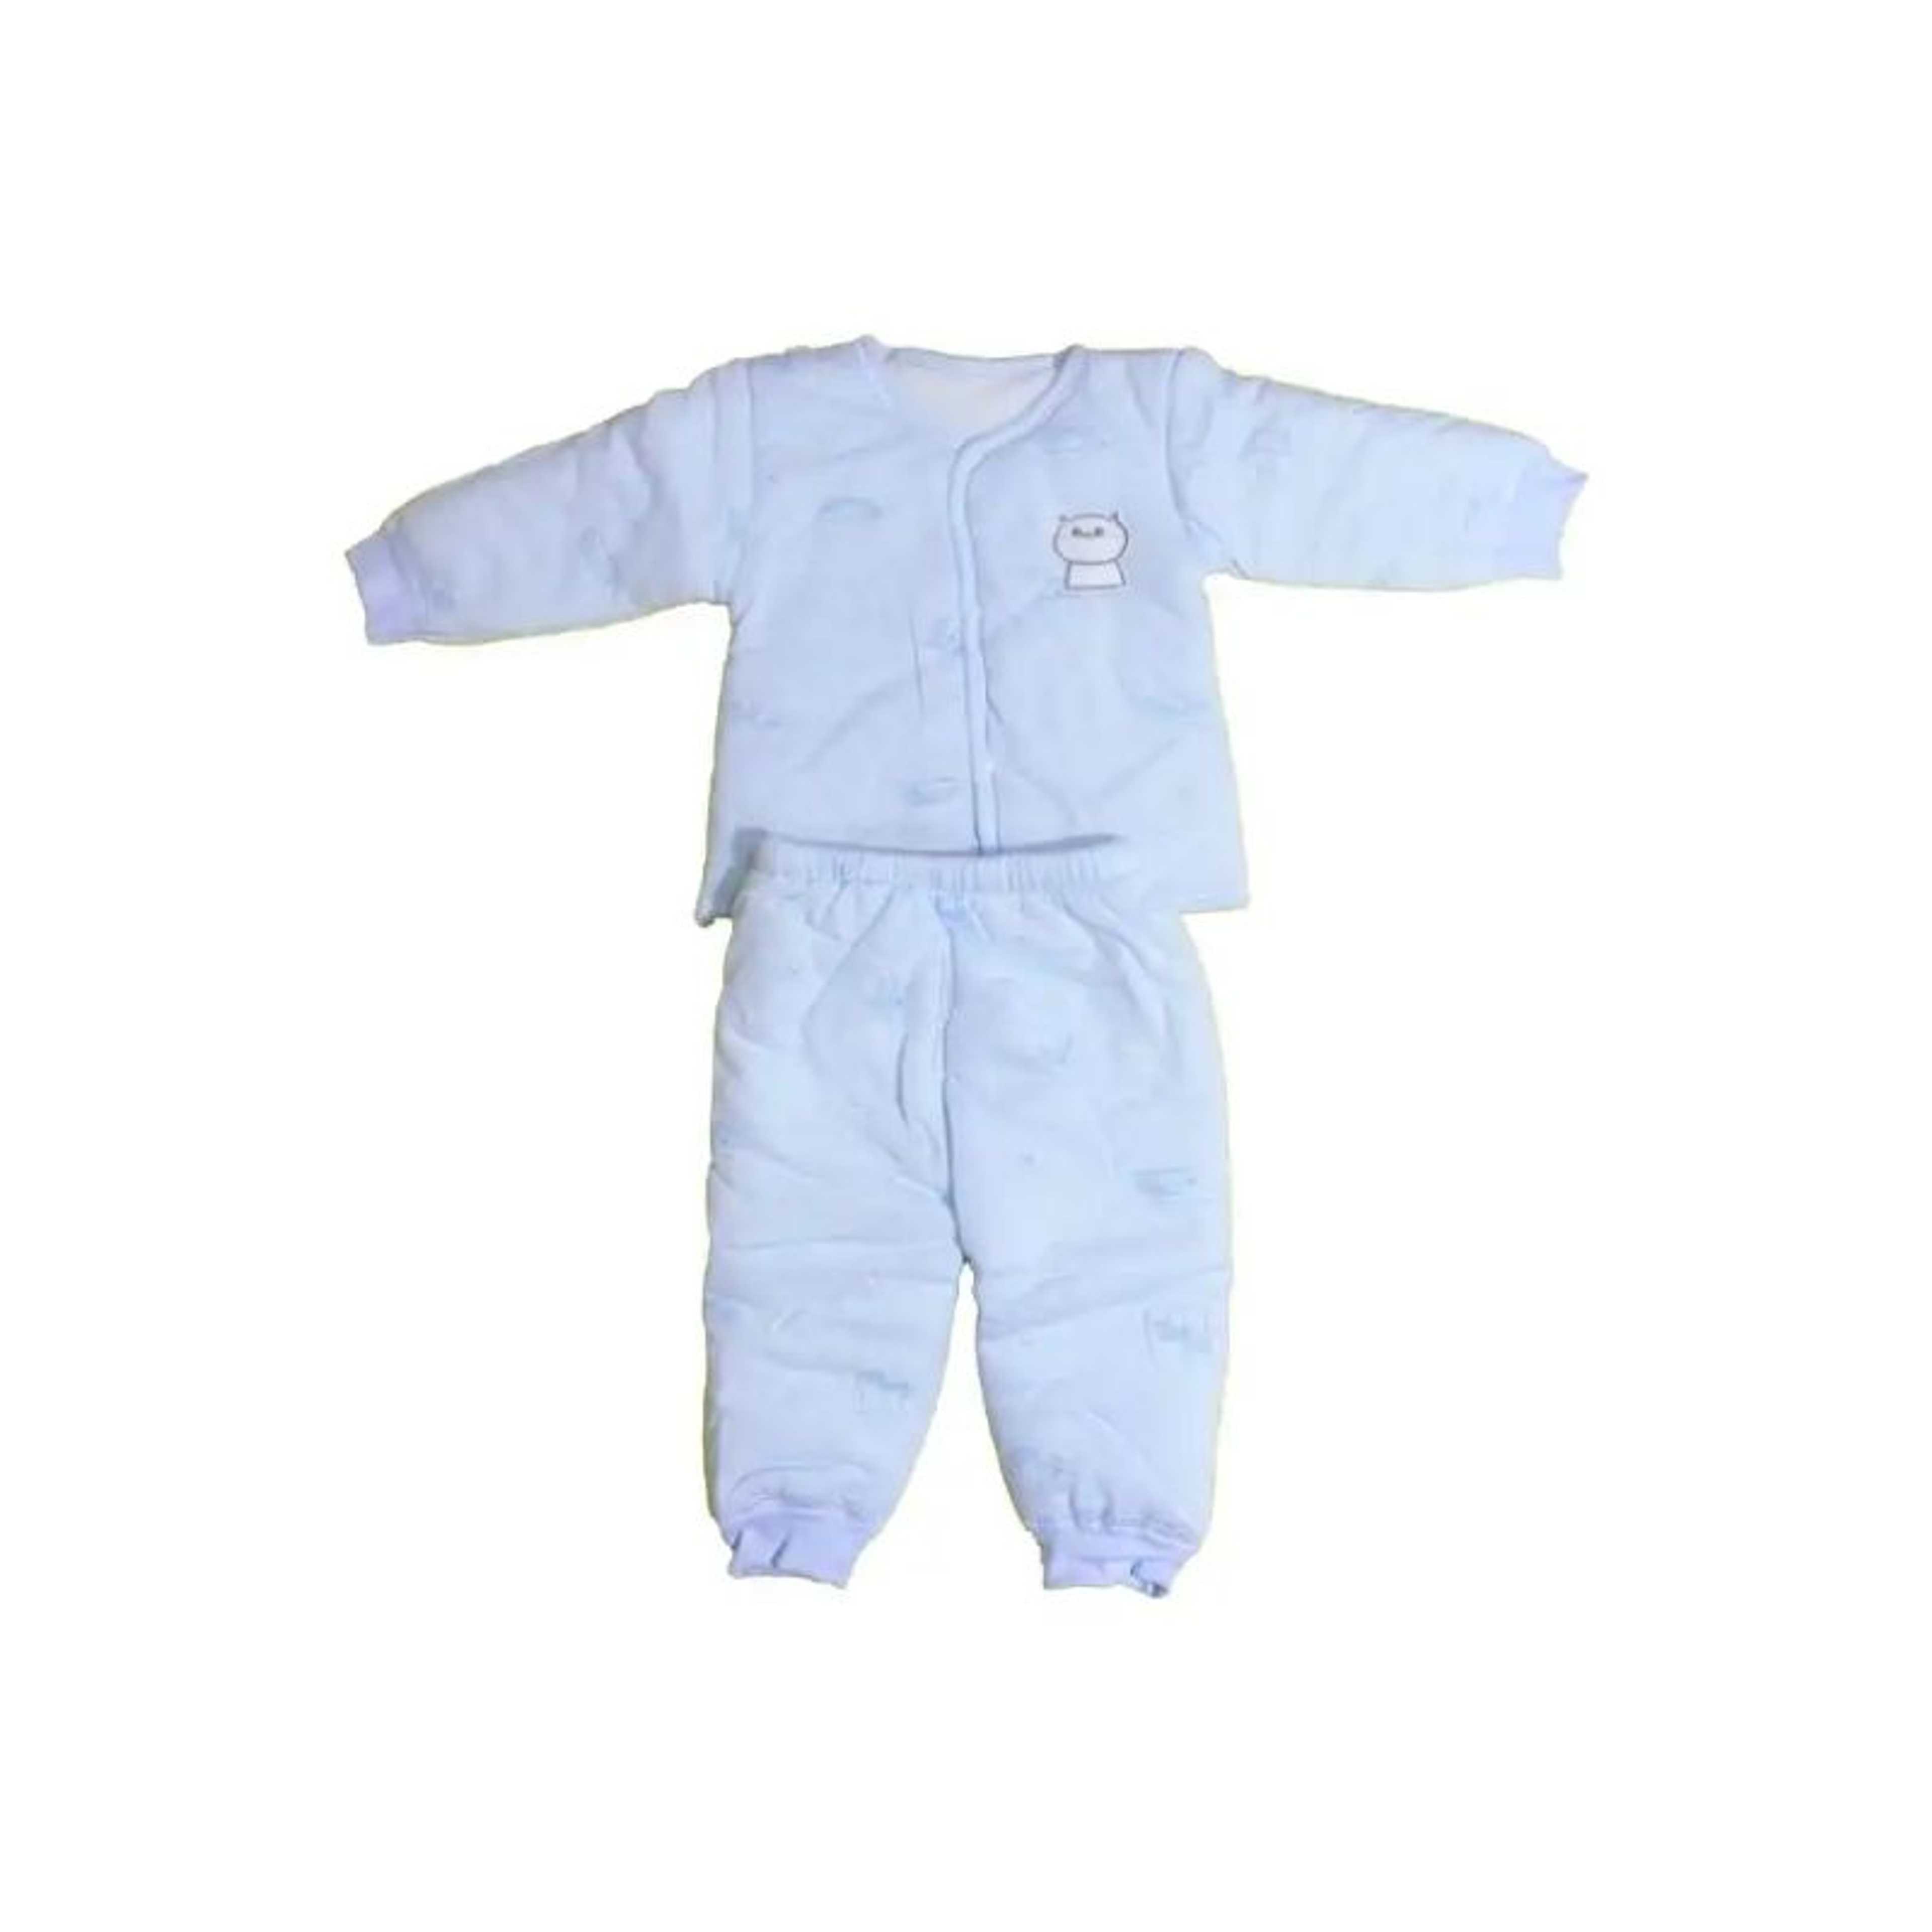 Warm comfort unisex baby clothing set
